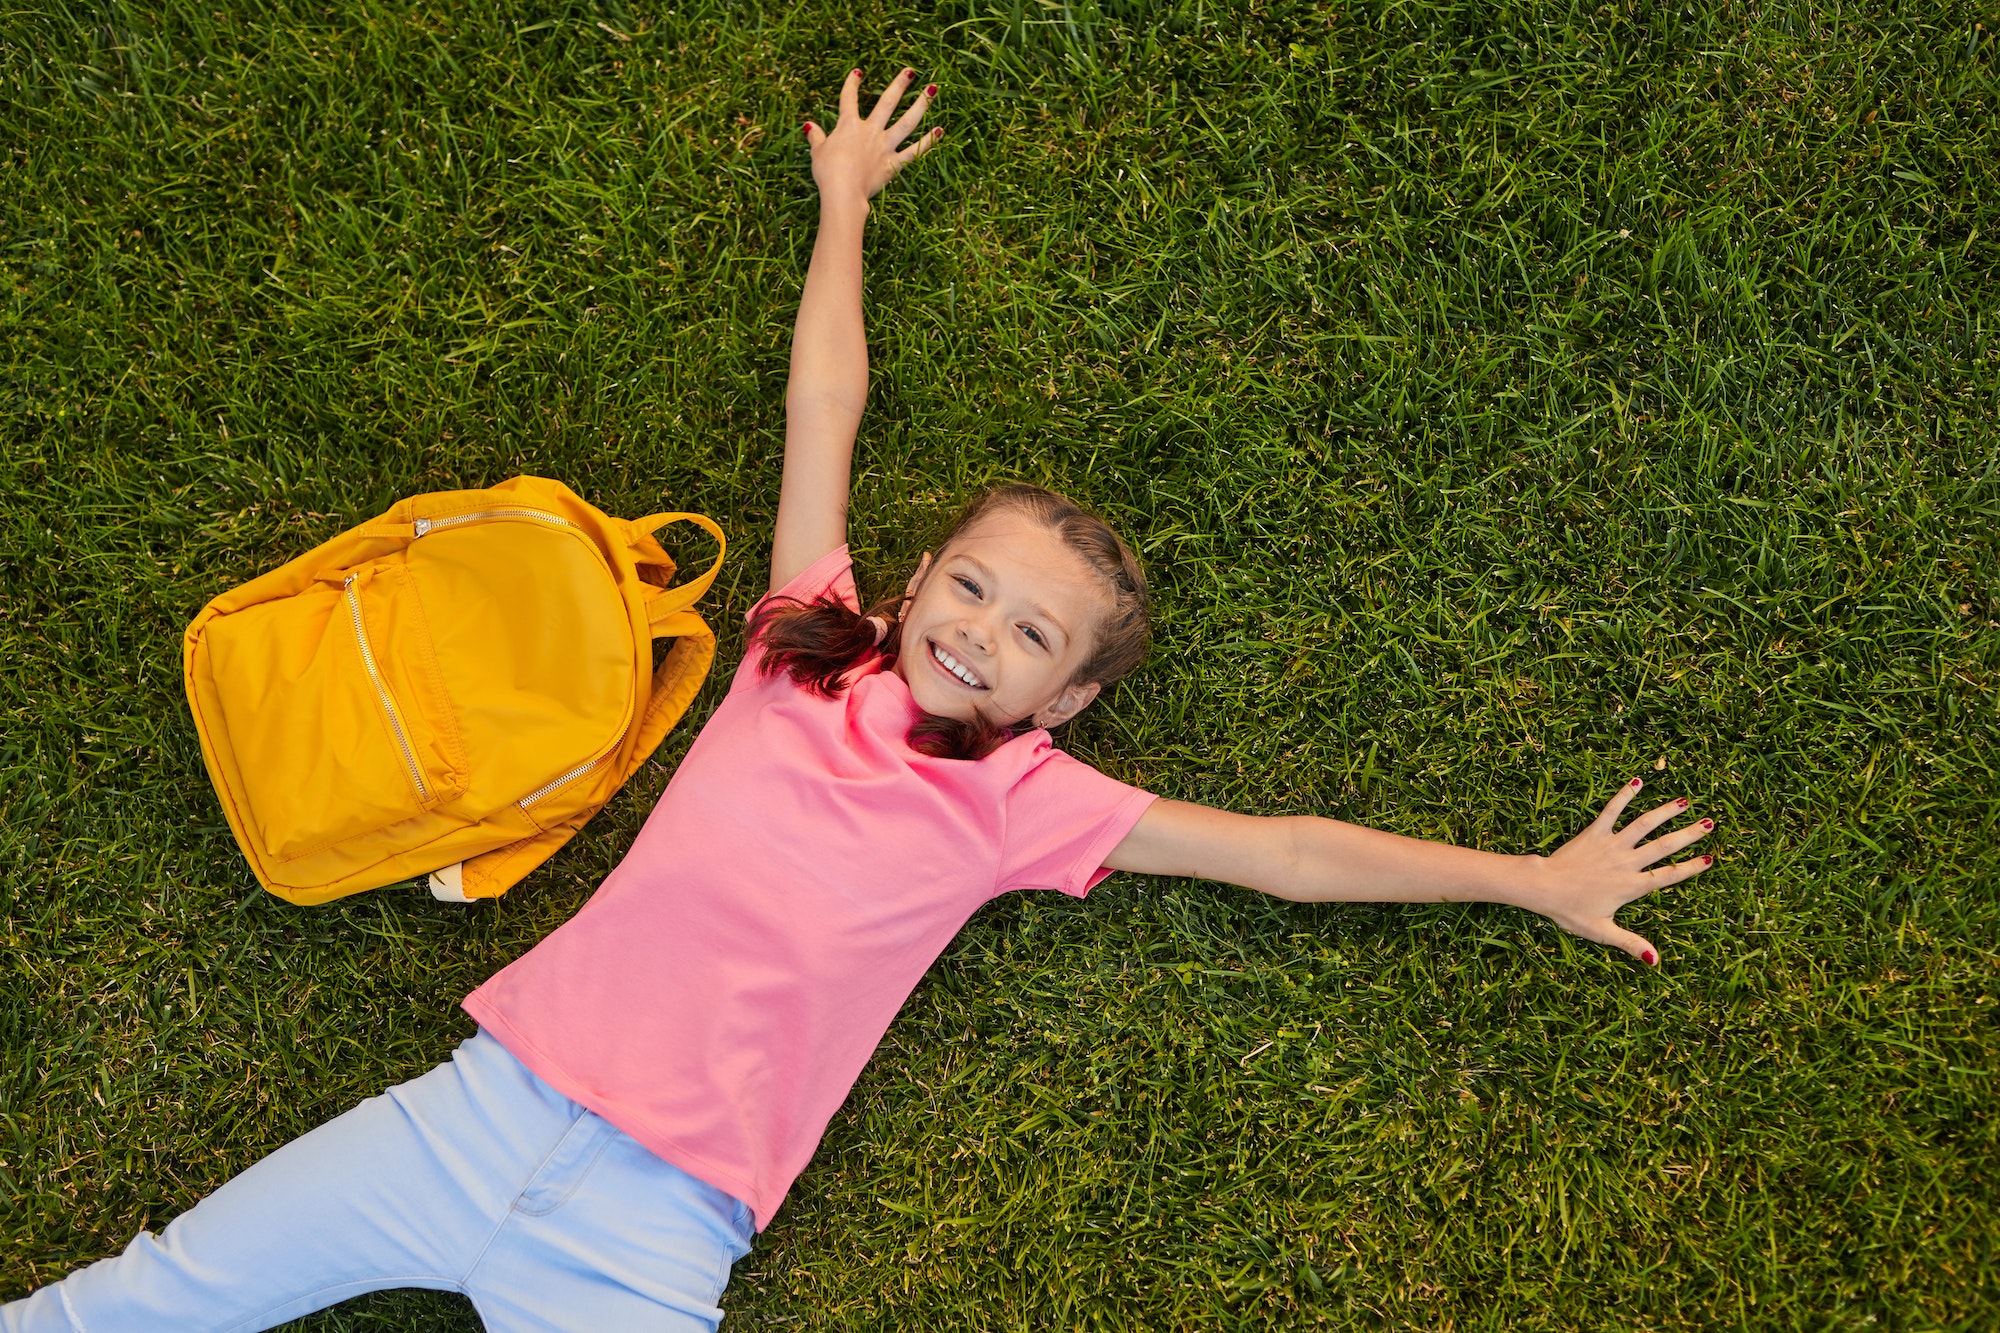 Smiling schoolgirl lying on grass during break